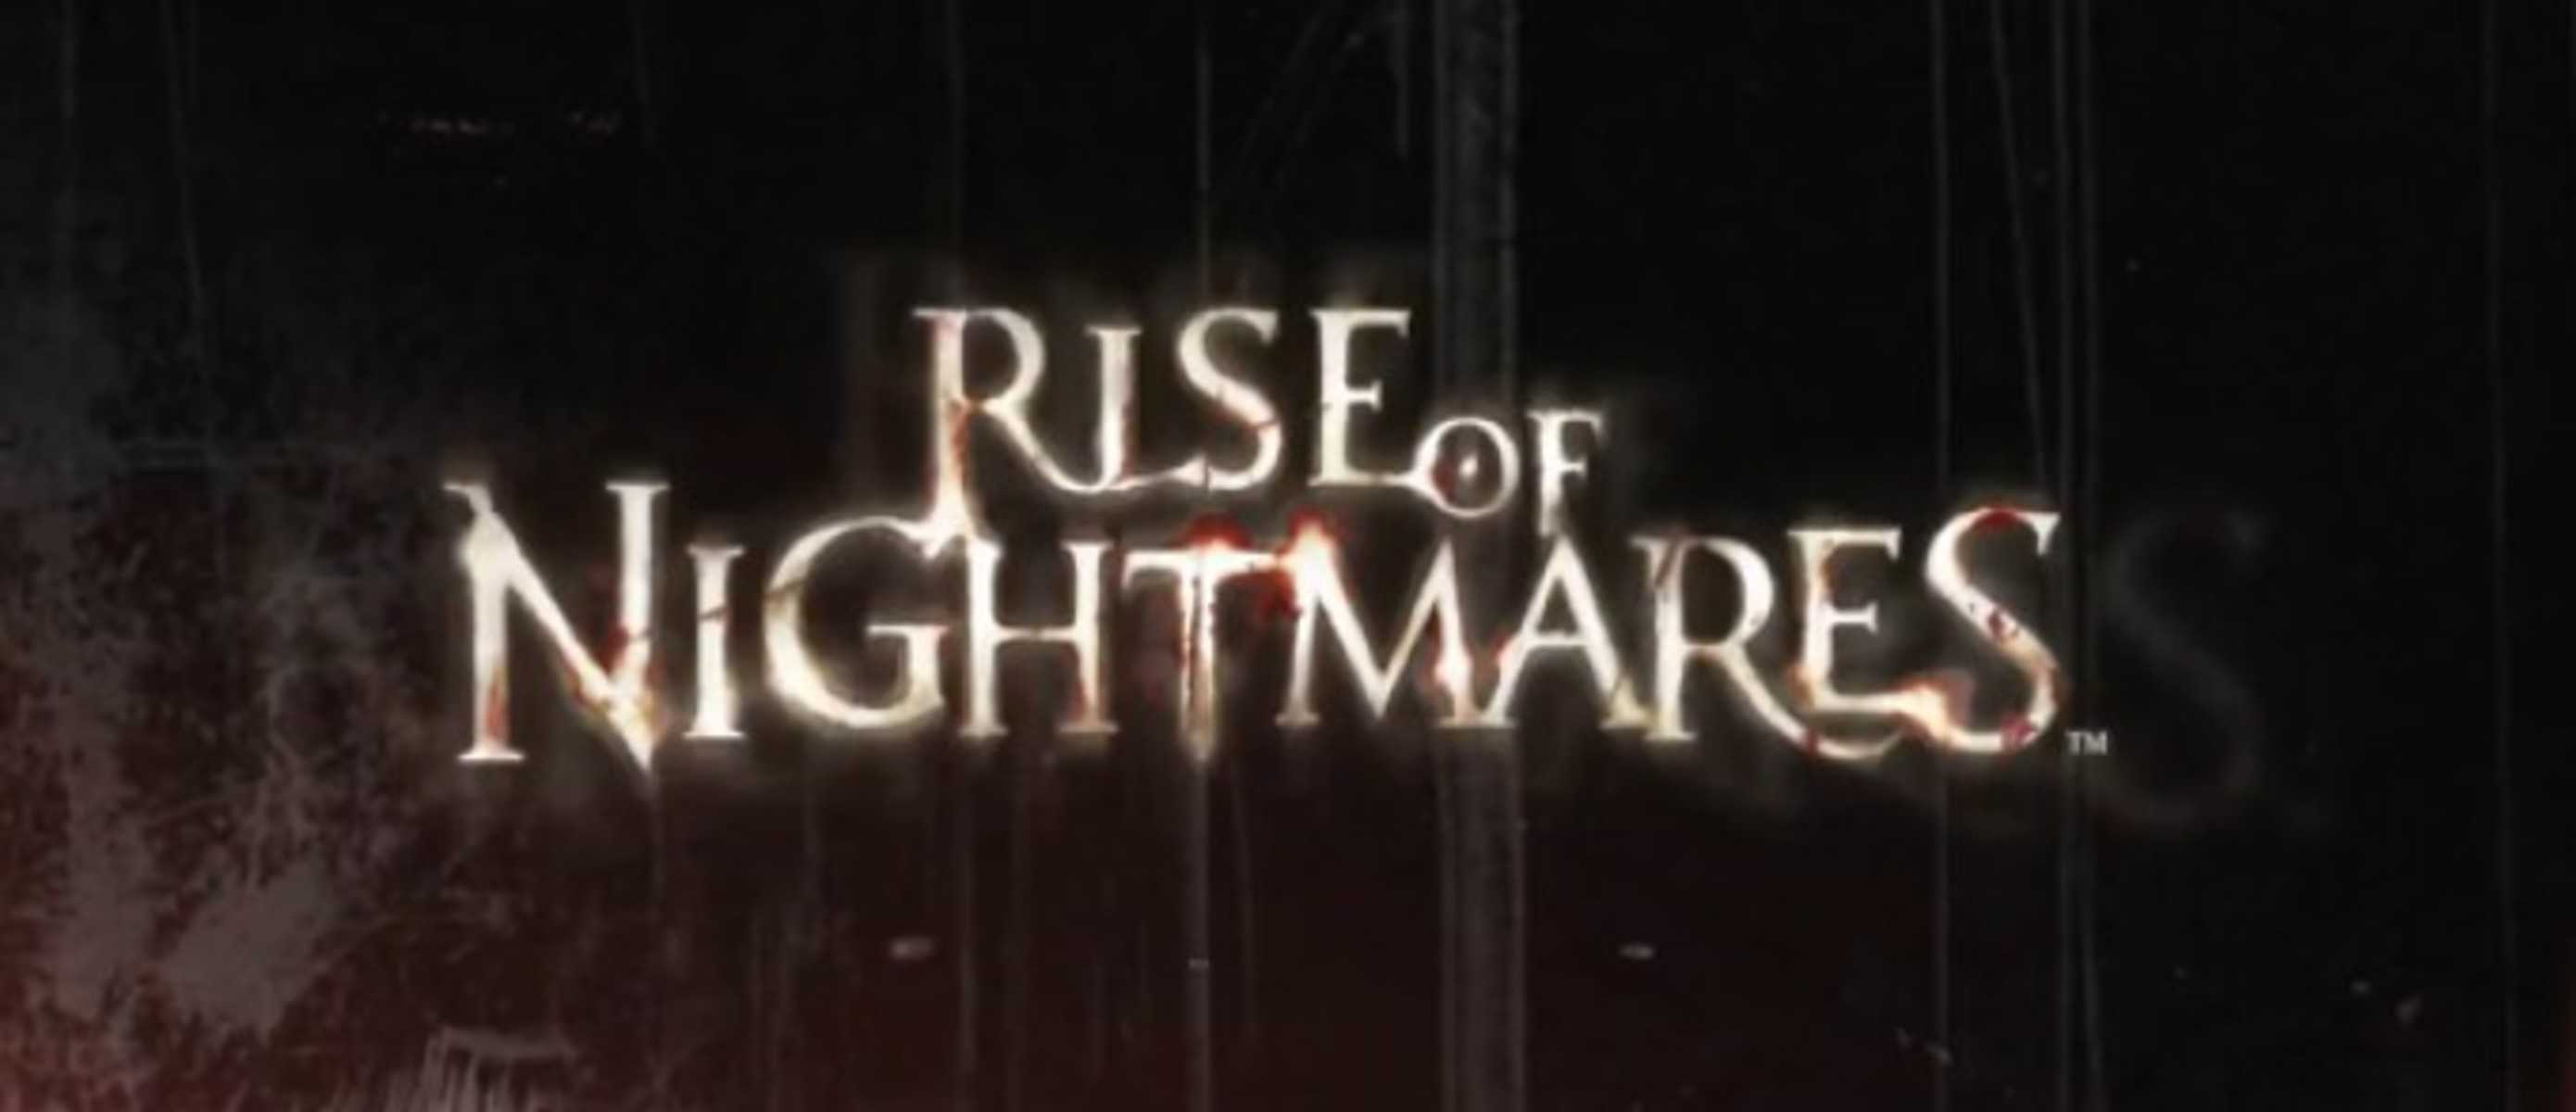 Rise of Nightmares - первая попытка сделать достойный хоррор для Kinect, в котором игрок будет ощущать опасность собственным телом Получилось ли у разработчиков передать ощущения